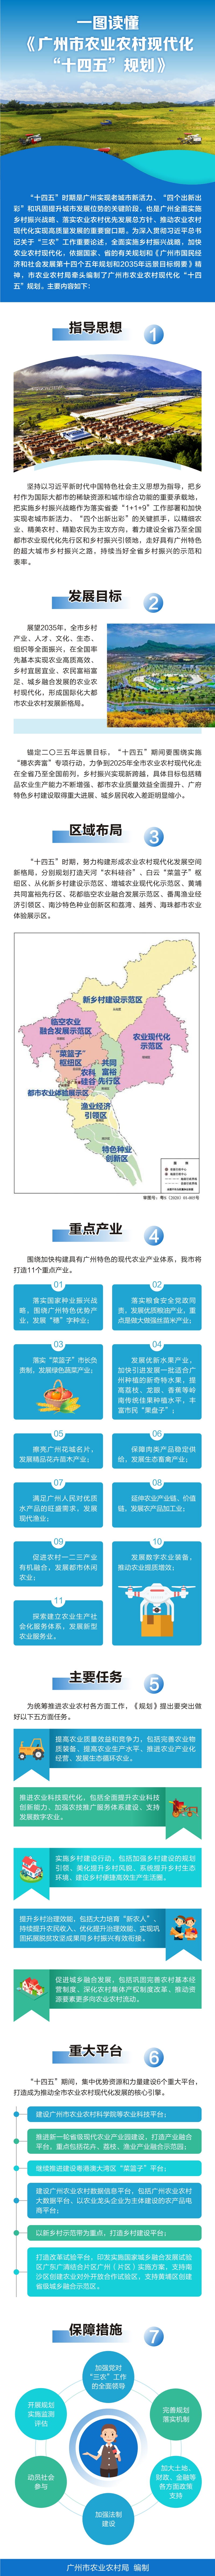 一图读懂《广州市农业农村现代化“十四五”规划》.jpg